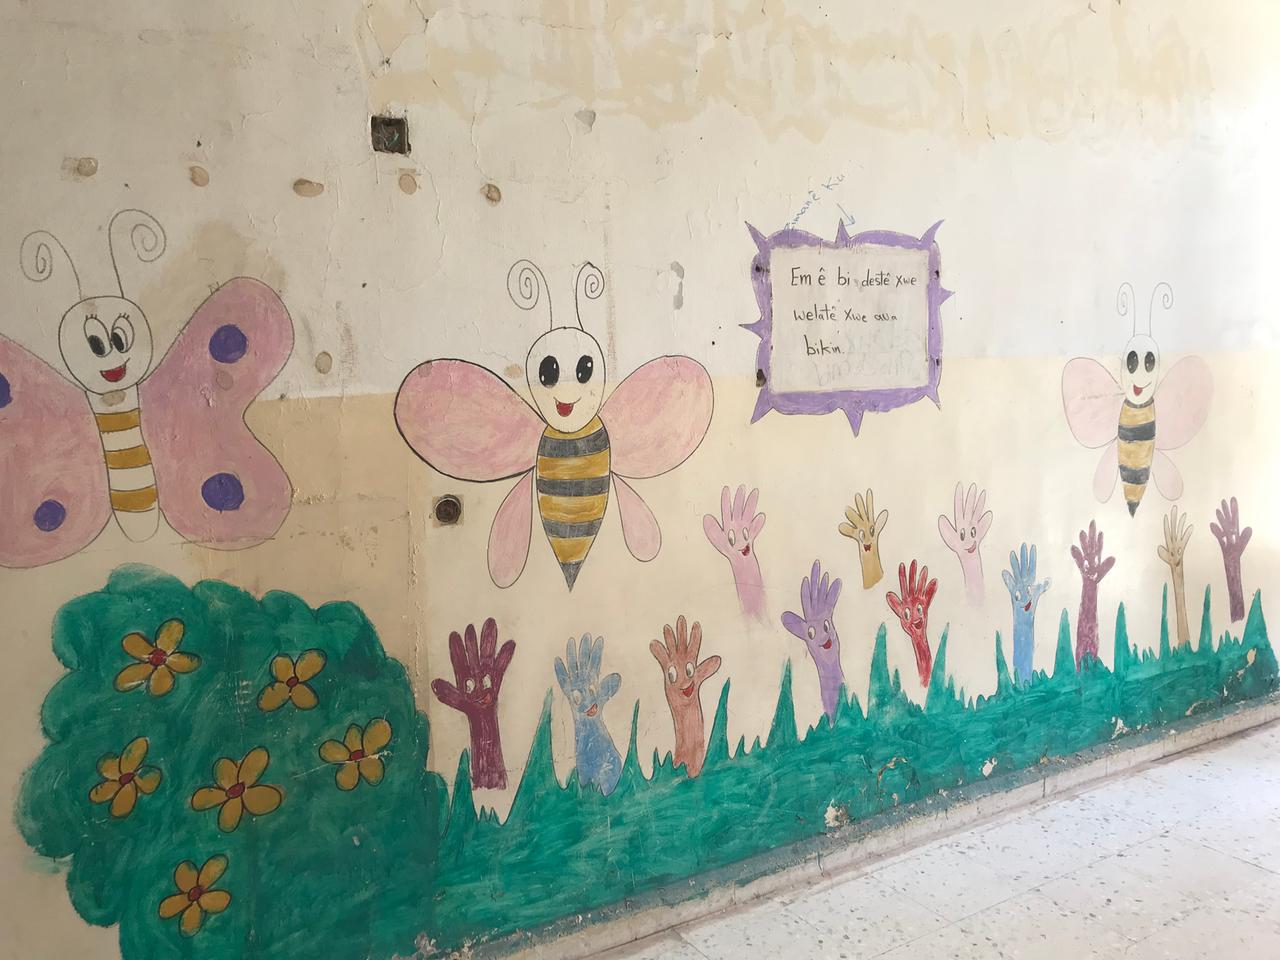 Wandbild in einer Grundschule in Nordsyrien